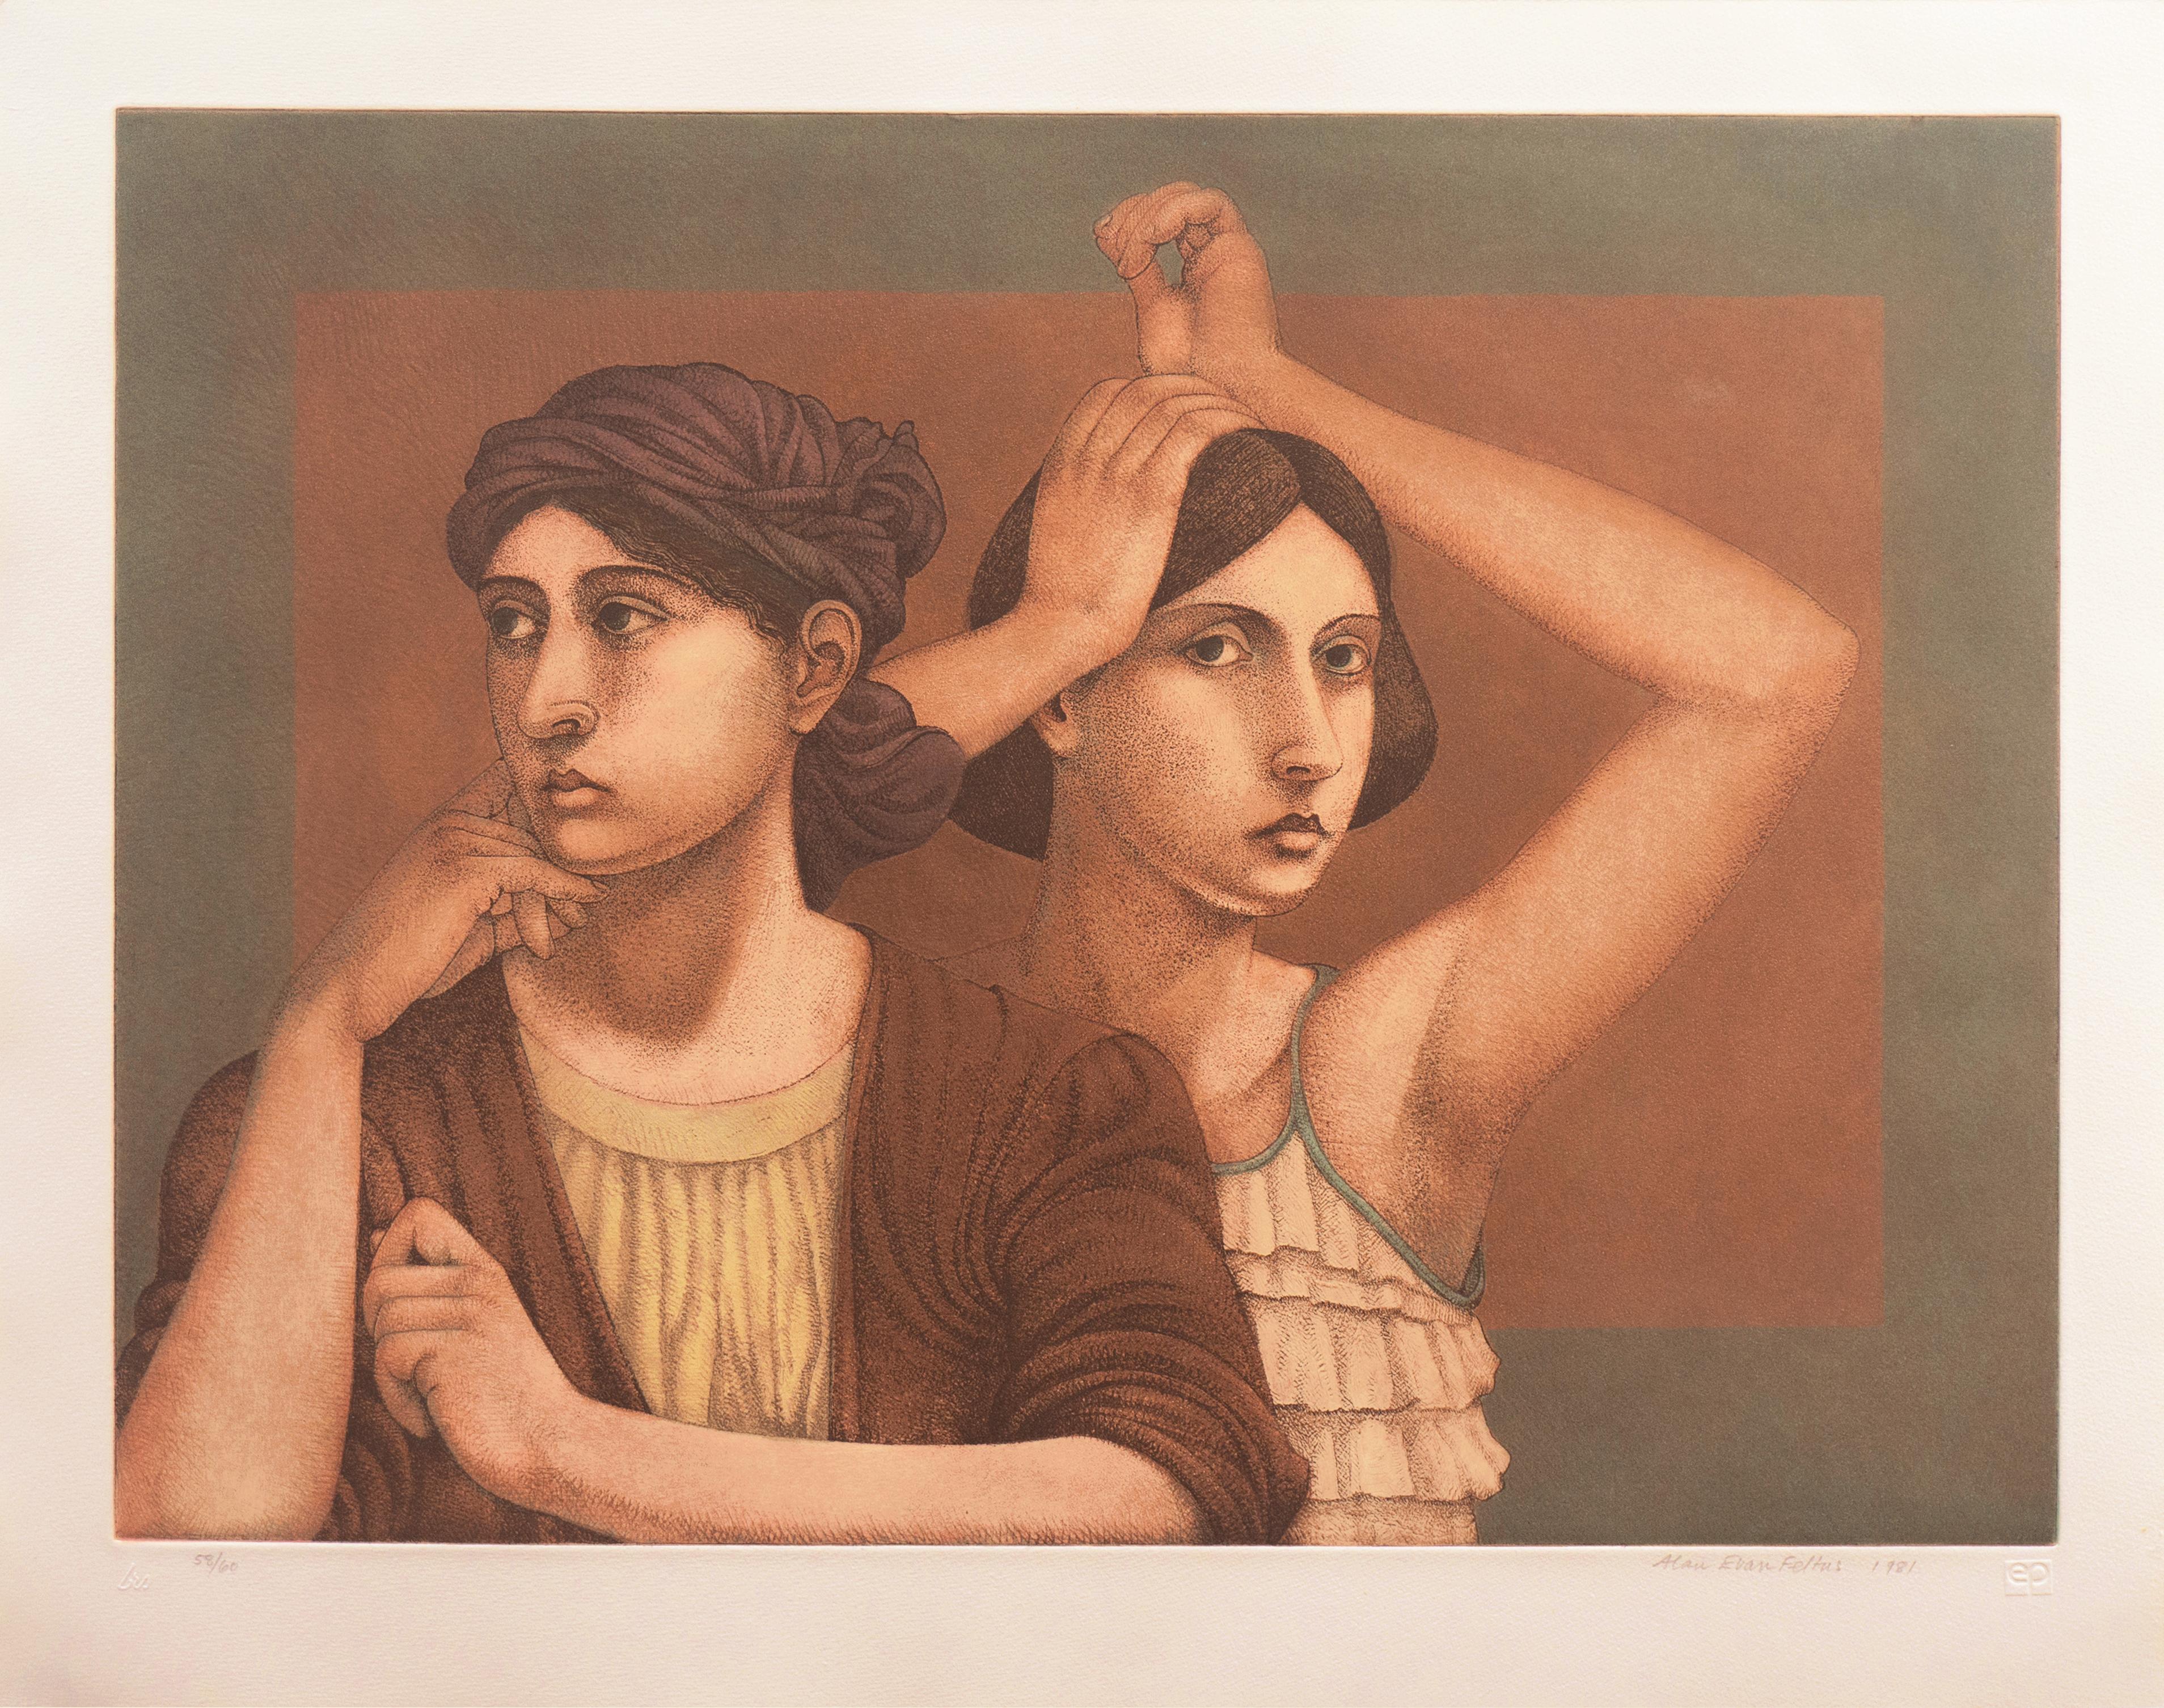 'Two Women', Yale, Cooper Union, Prix de Rome, Tyler School of Art, Smithsonian - Print by Alan Feltus